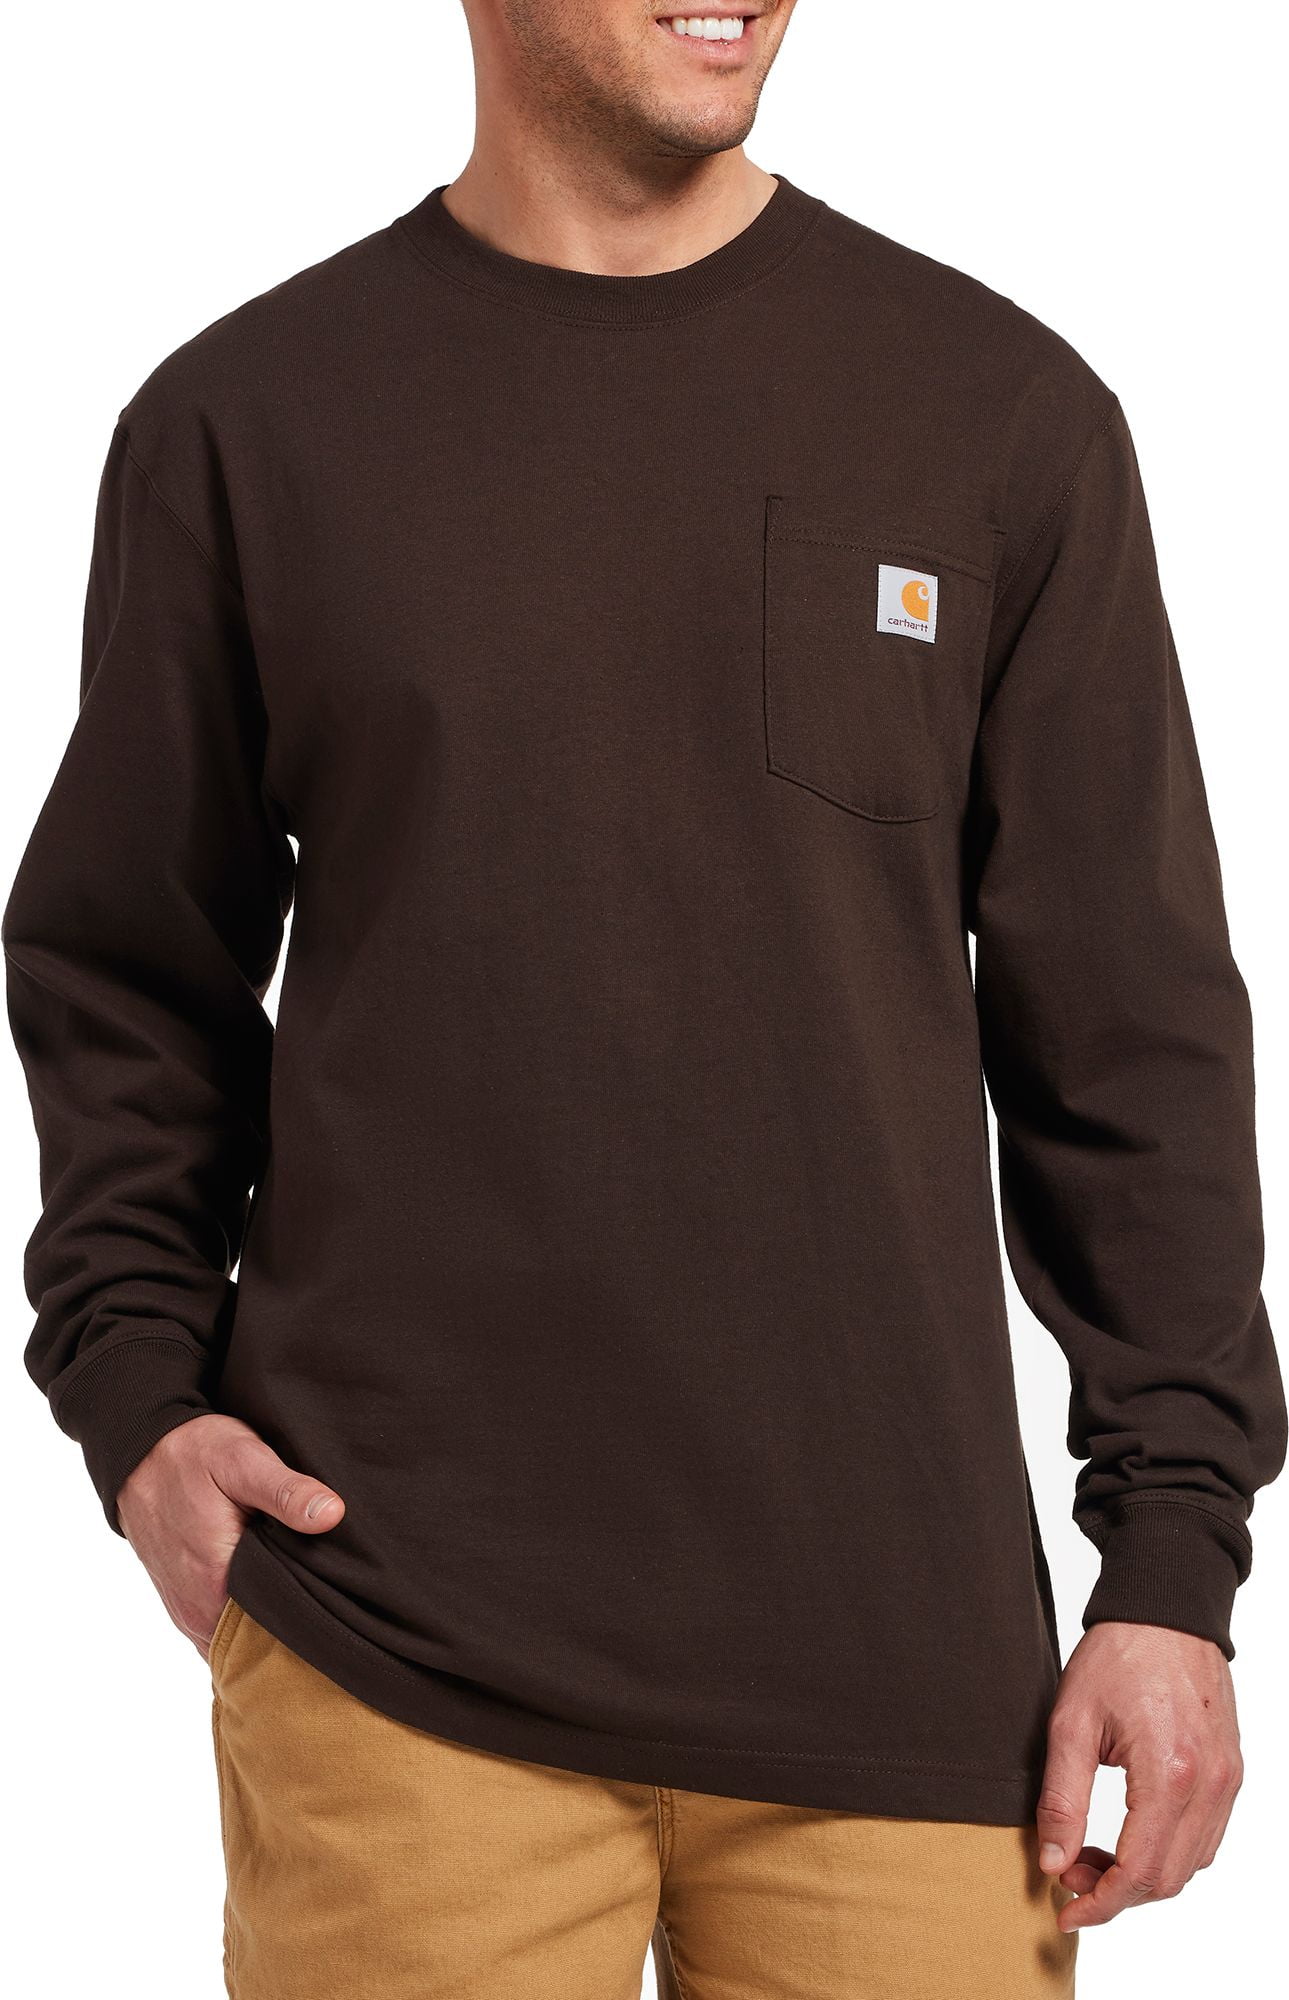 Carhartt - Carhartt Men's Workwear Long Sleeve Shirt - Walmart.com ...